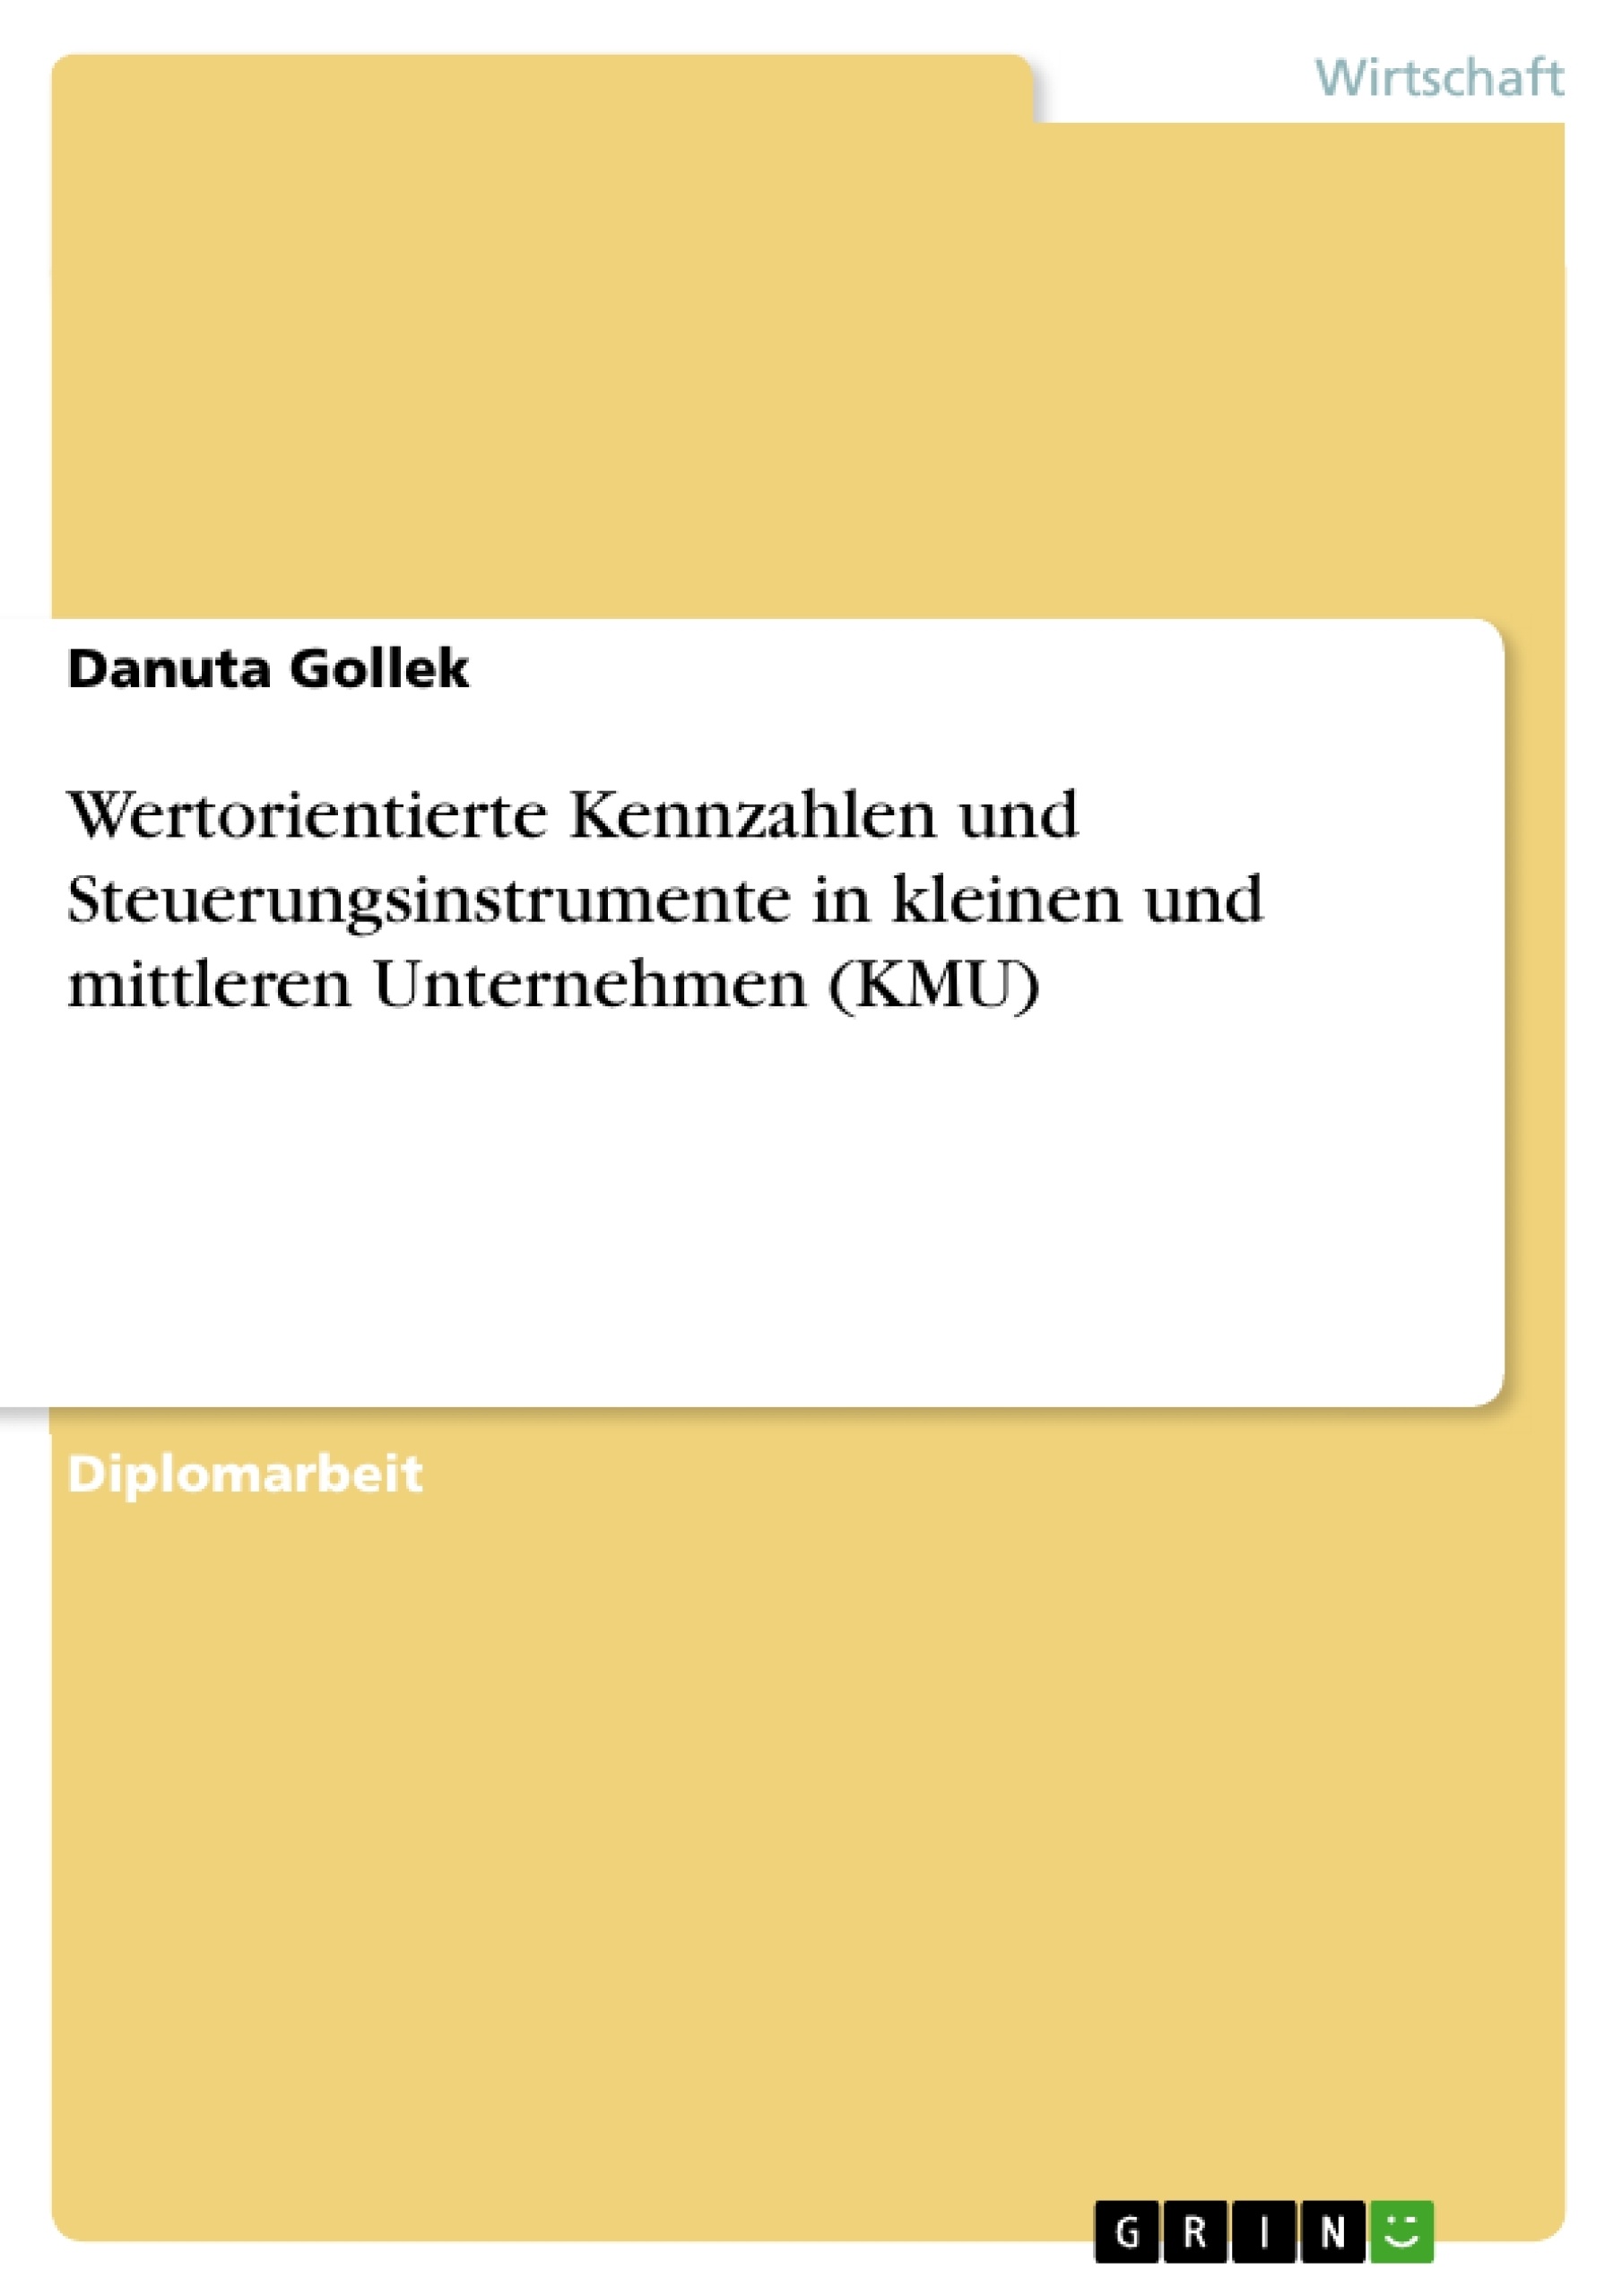 Title: Wertorientierte Kennzahlen und Steuerungsinstrumente in kleinen und mittleren Unternehmen (KMU)